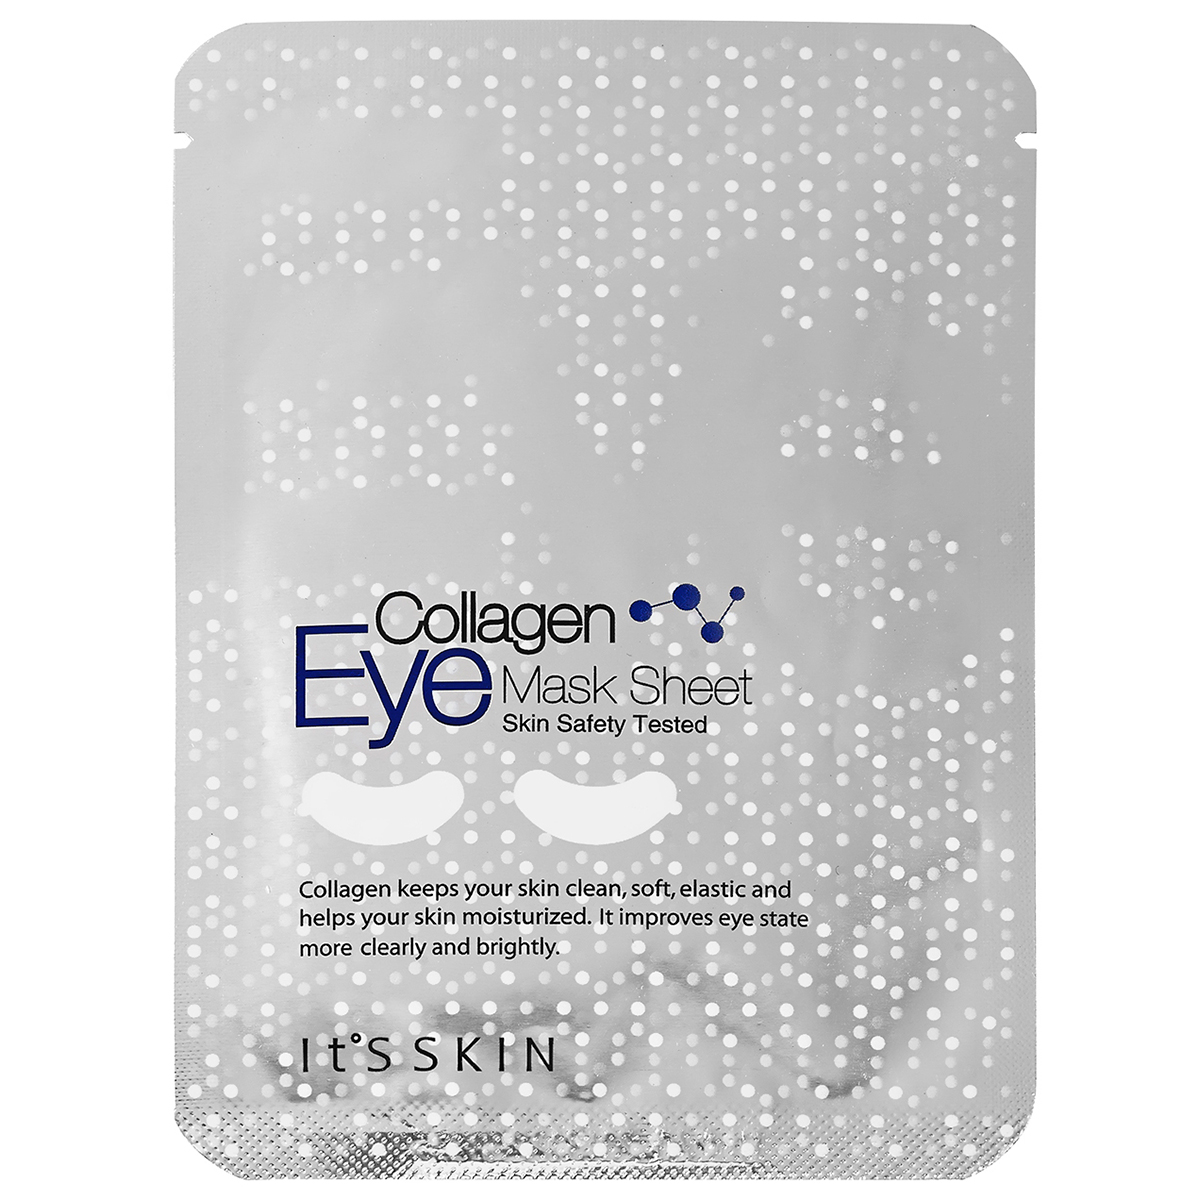 Eye mask sheet Collagen, It'S SKIN K-Beauty Hudpleie - K-Beauty